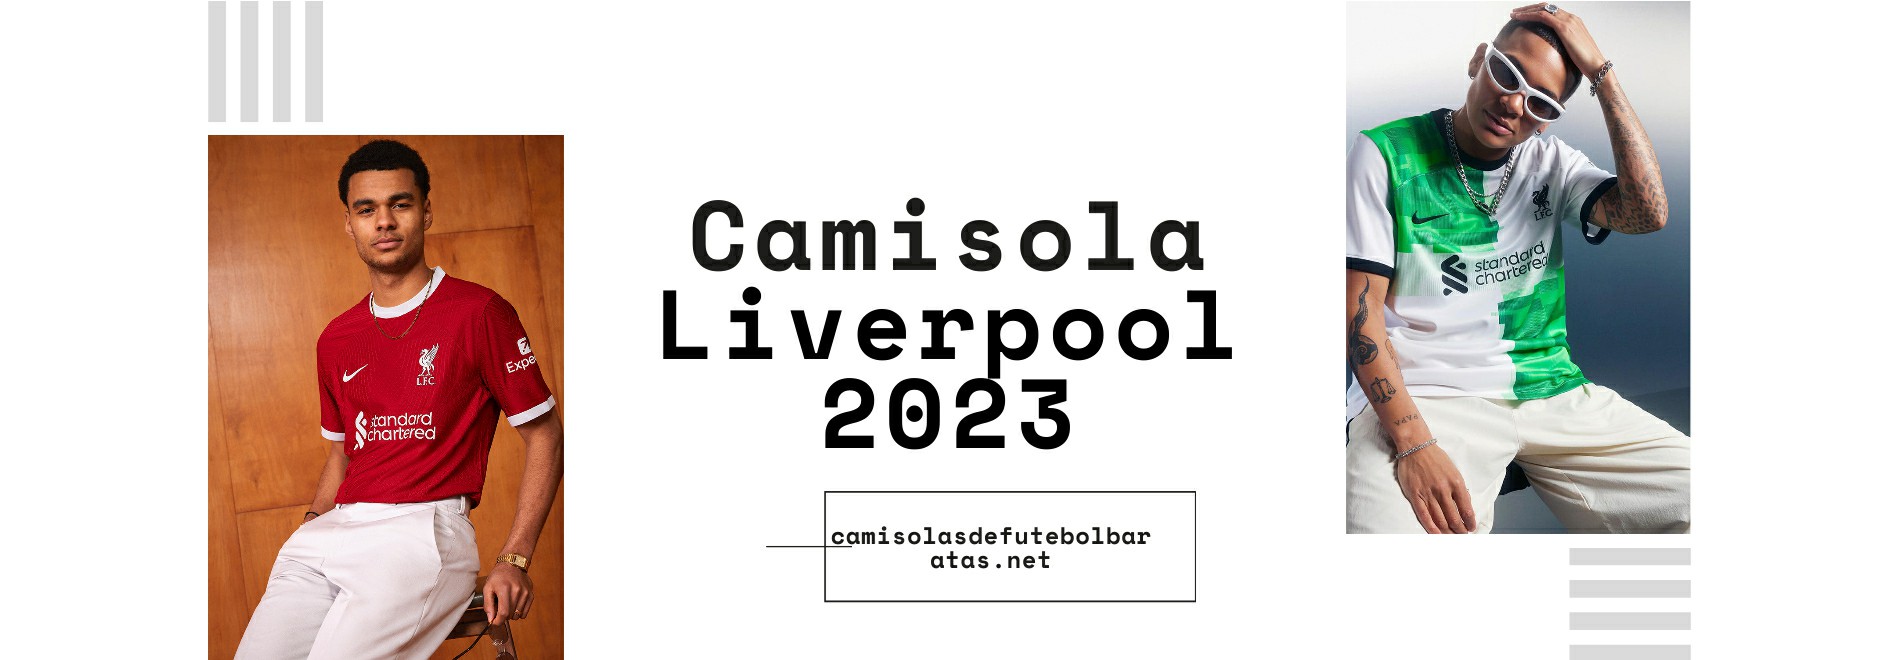 Camisola Liverpool 2023-2024